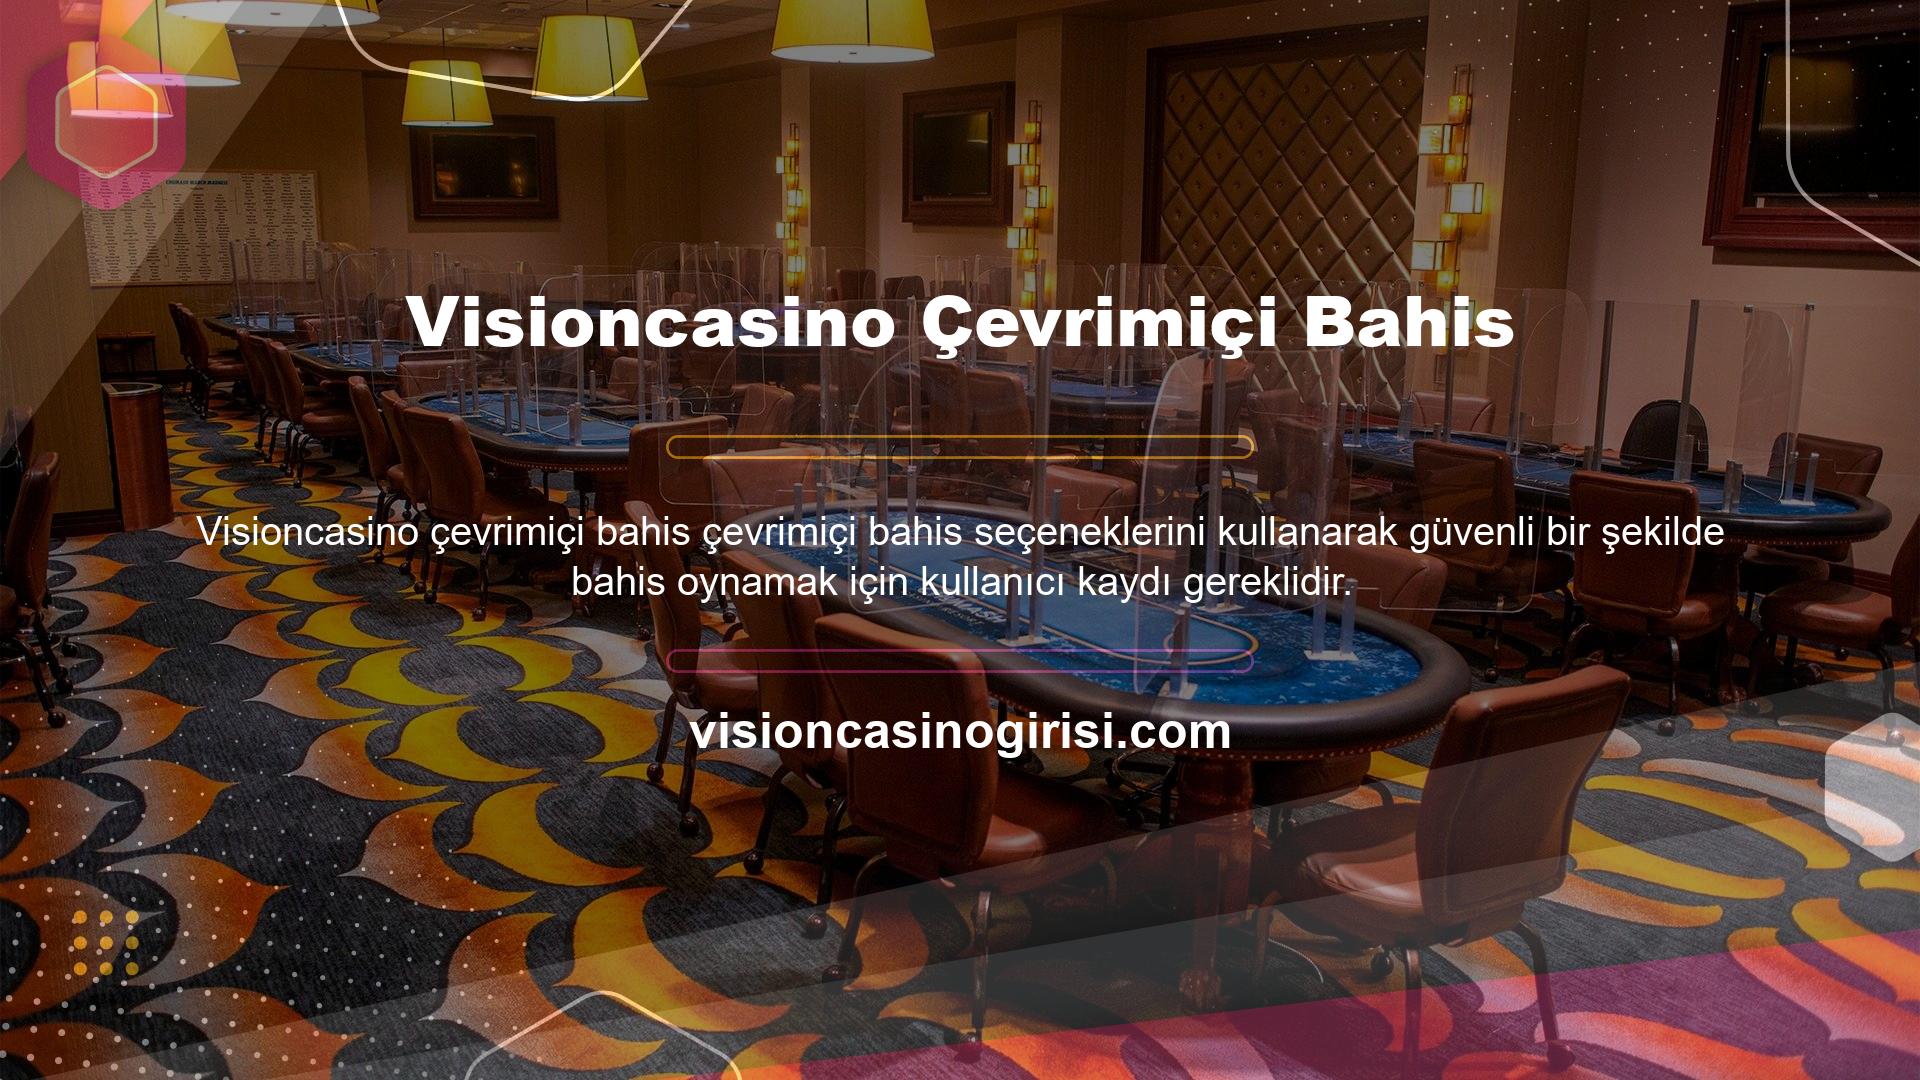 Visioncasino, site üzerinden üyelik işlemleri için kullanıcılara hesap sunmaktadır